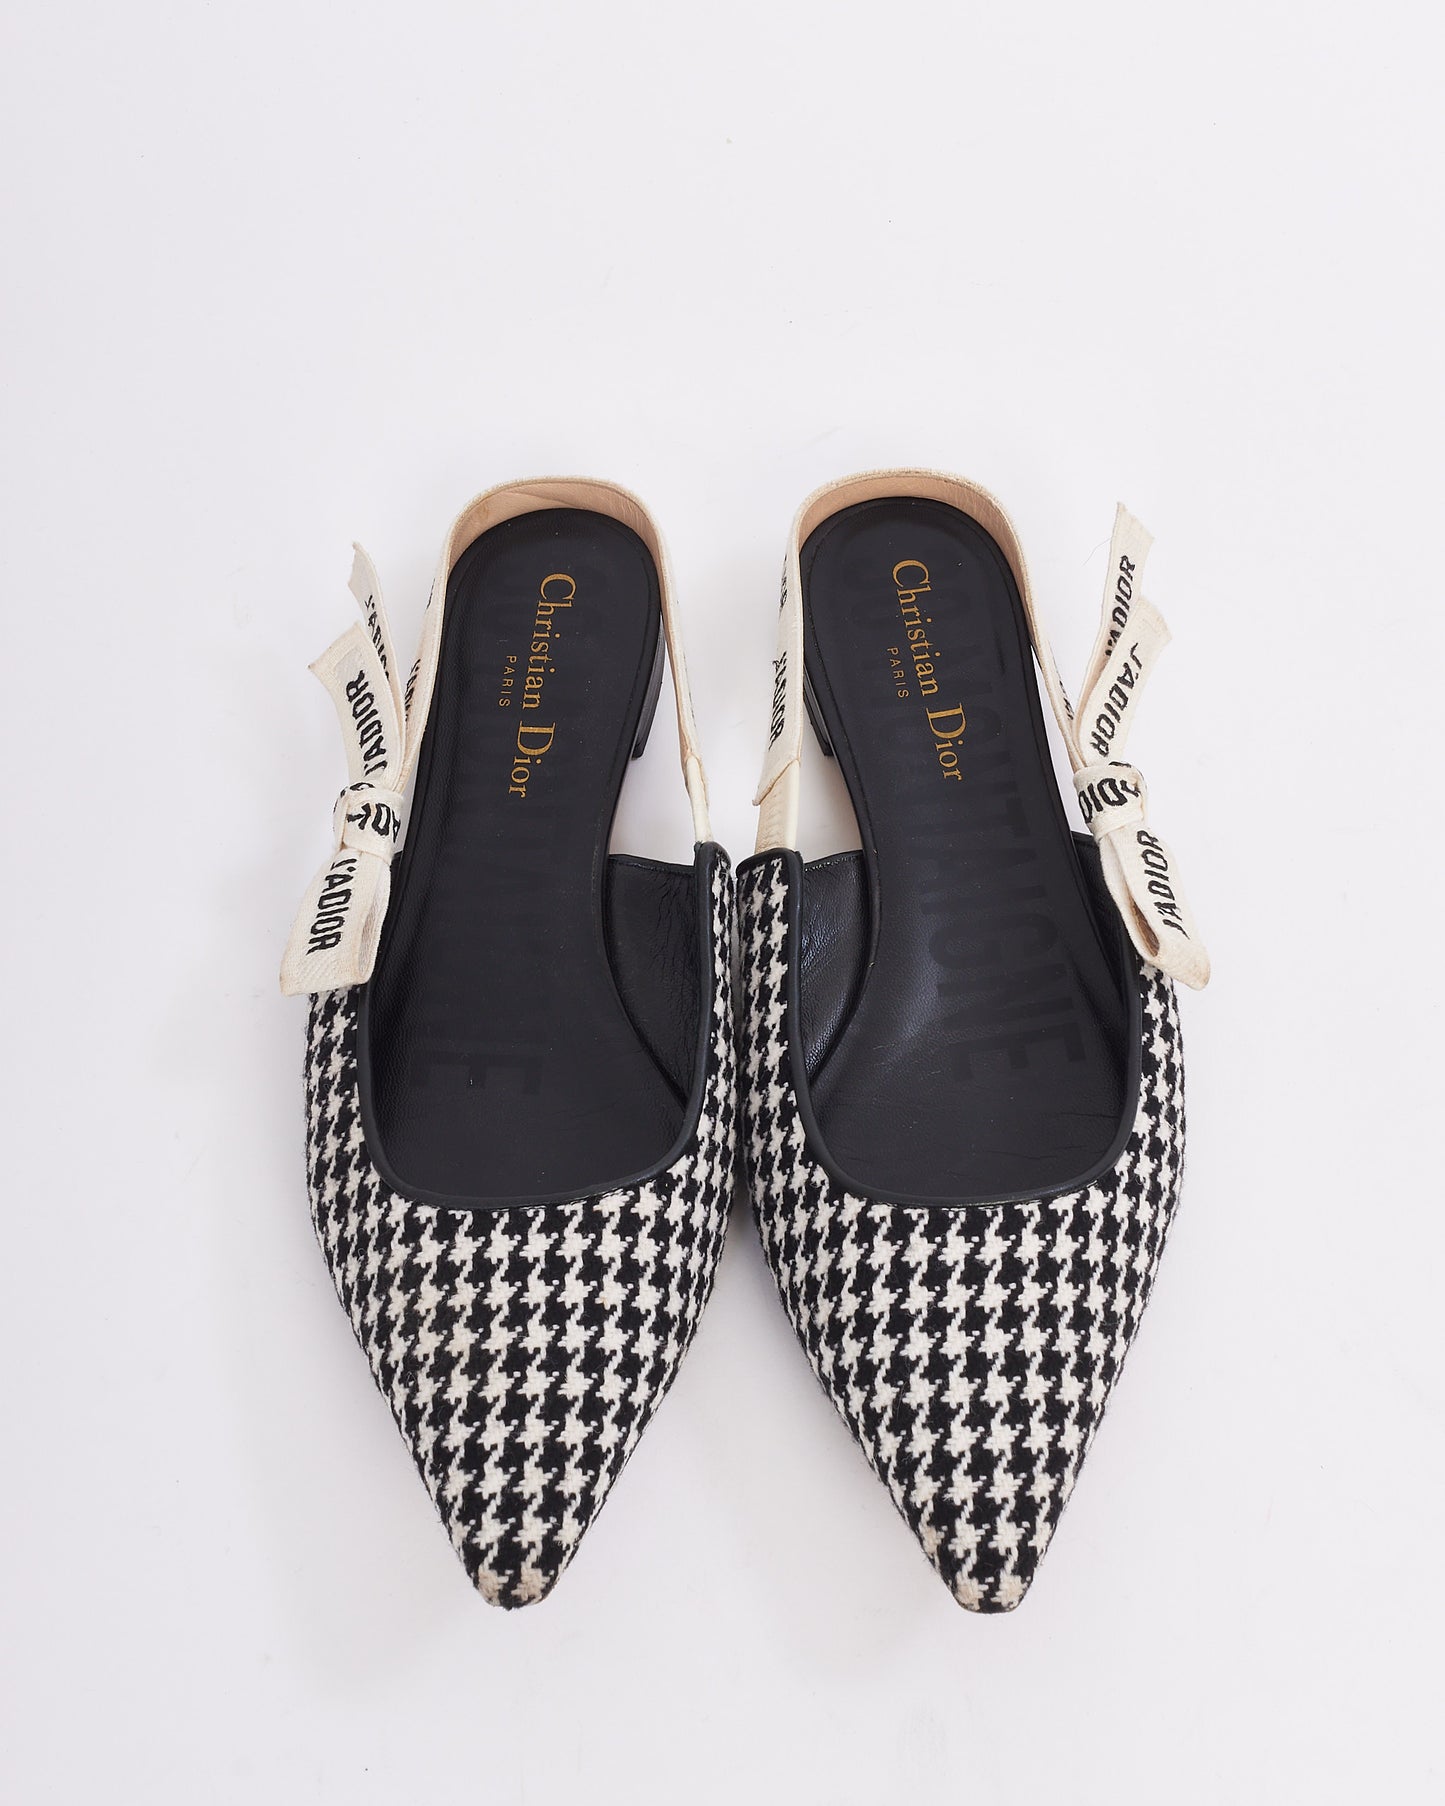 Chaussures plates à bride arrière J'adior en laine pied-de-poule noir et blanc Dior - 39,5